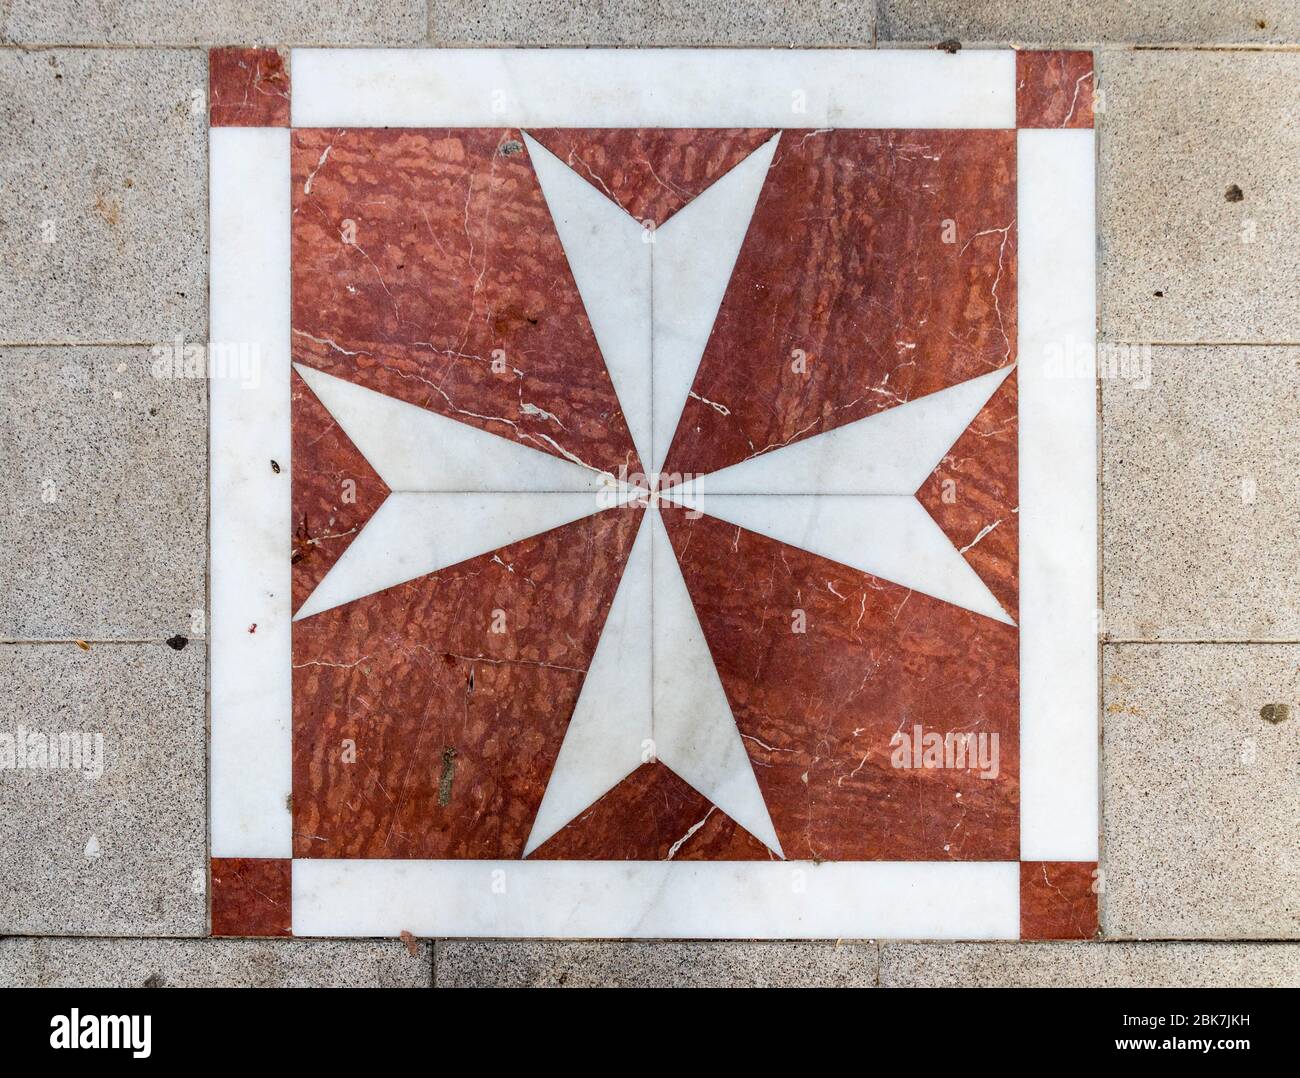 Lora del Rio, Espagne. Mosaïque à l'étage avec la Croix de Saint Jean, emblème de l'ordre militaire souverain de Malte, dans cette ville d'Andalousie Banque D'Images